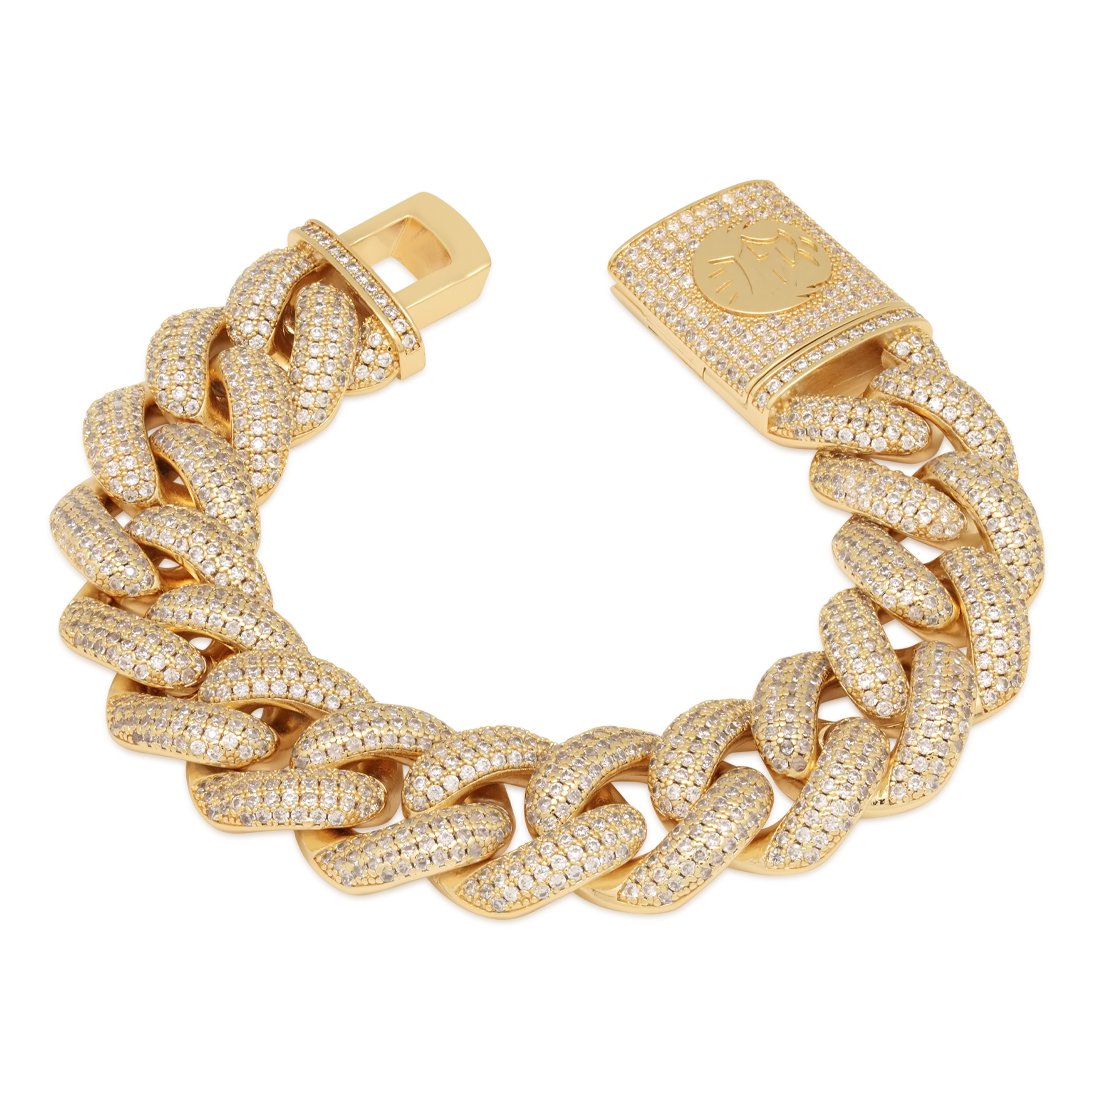 Mens Bracelet Gold 14k Gold PVD Cuban Curb Chain Unisex  Etsy Canada   Mens gold bracelets Unisex bracelets Gold bracelet